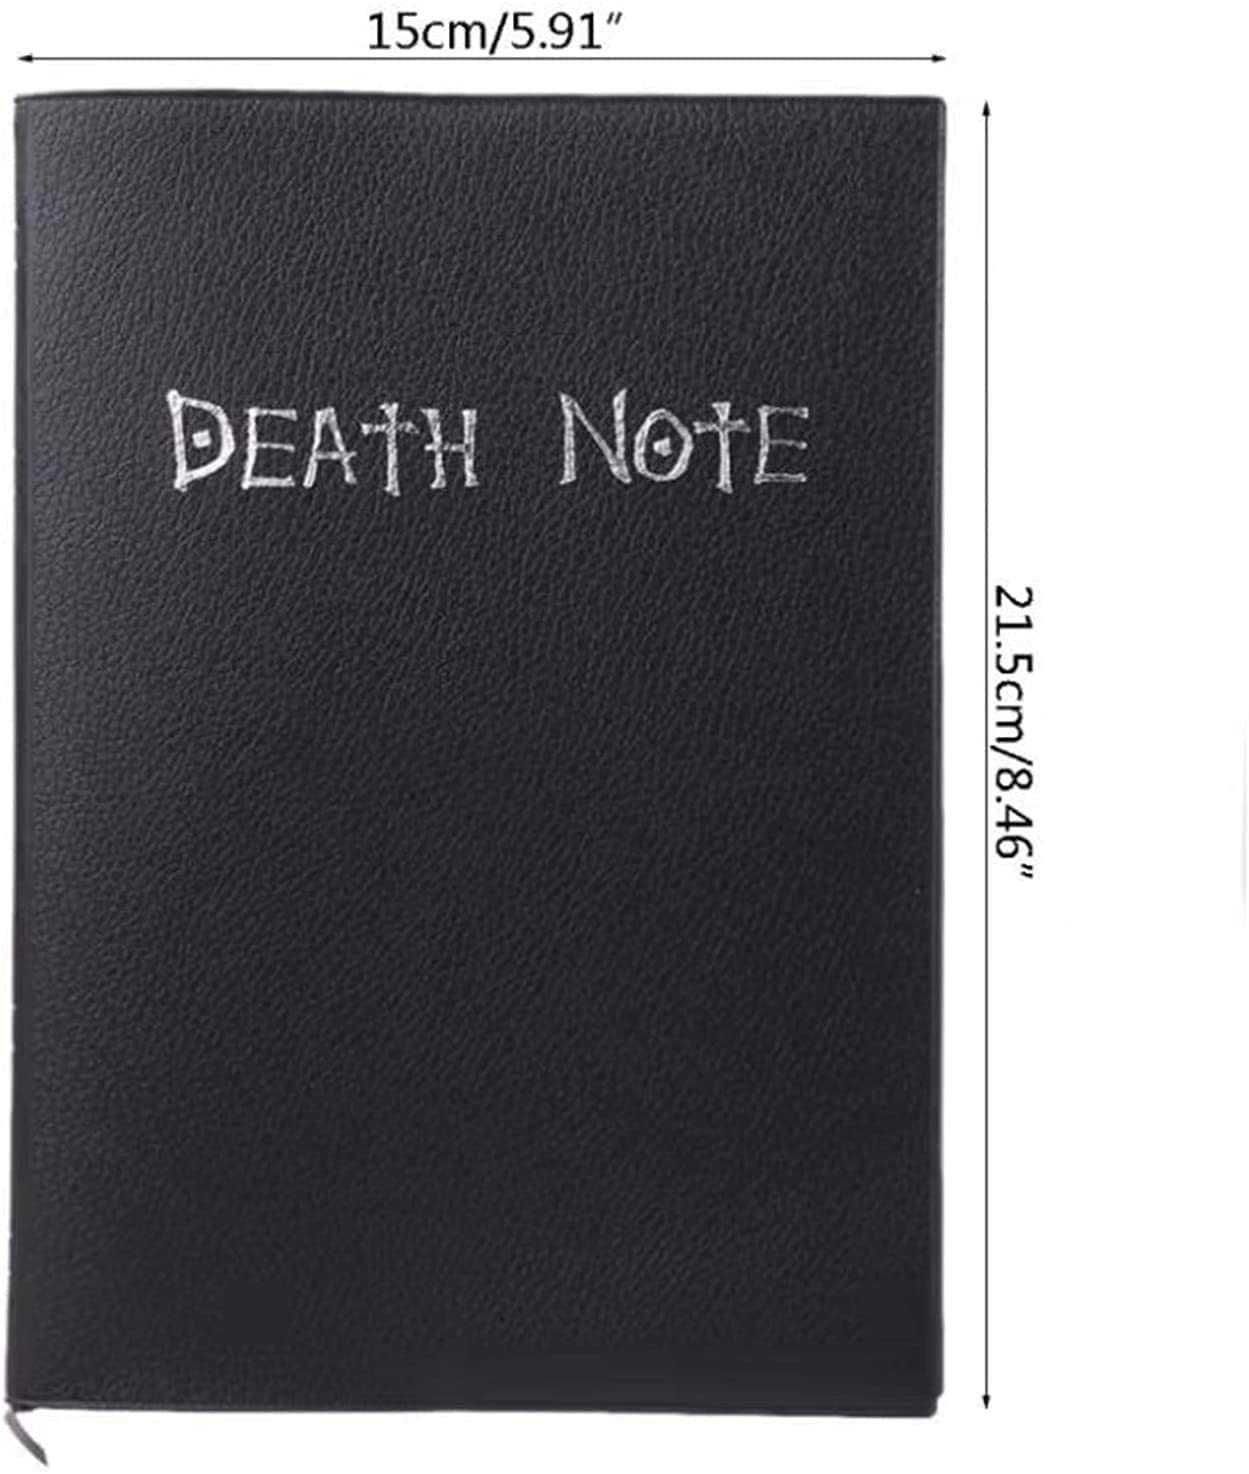 Death Note caderno + pena + colar L + marcador - NOVO - ENVIO GRÁTIS